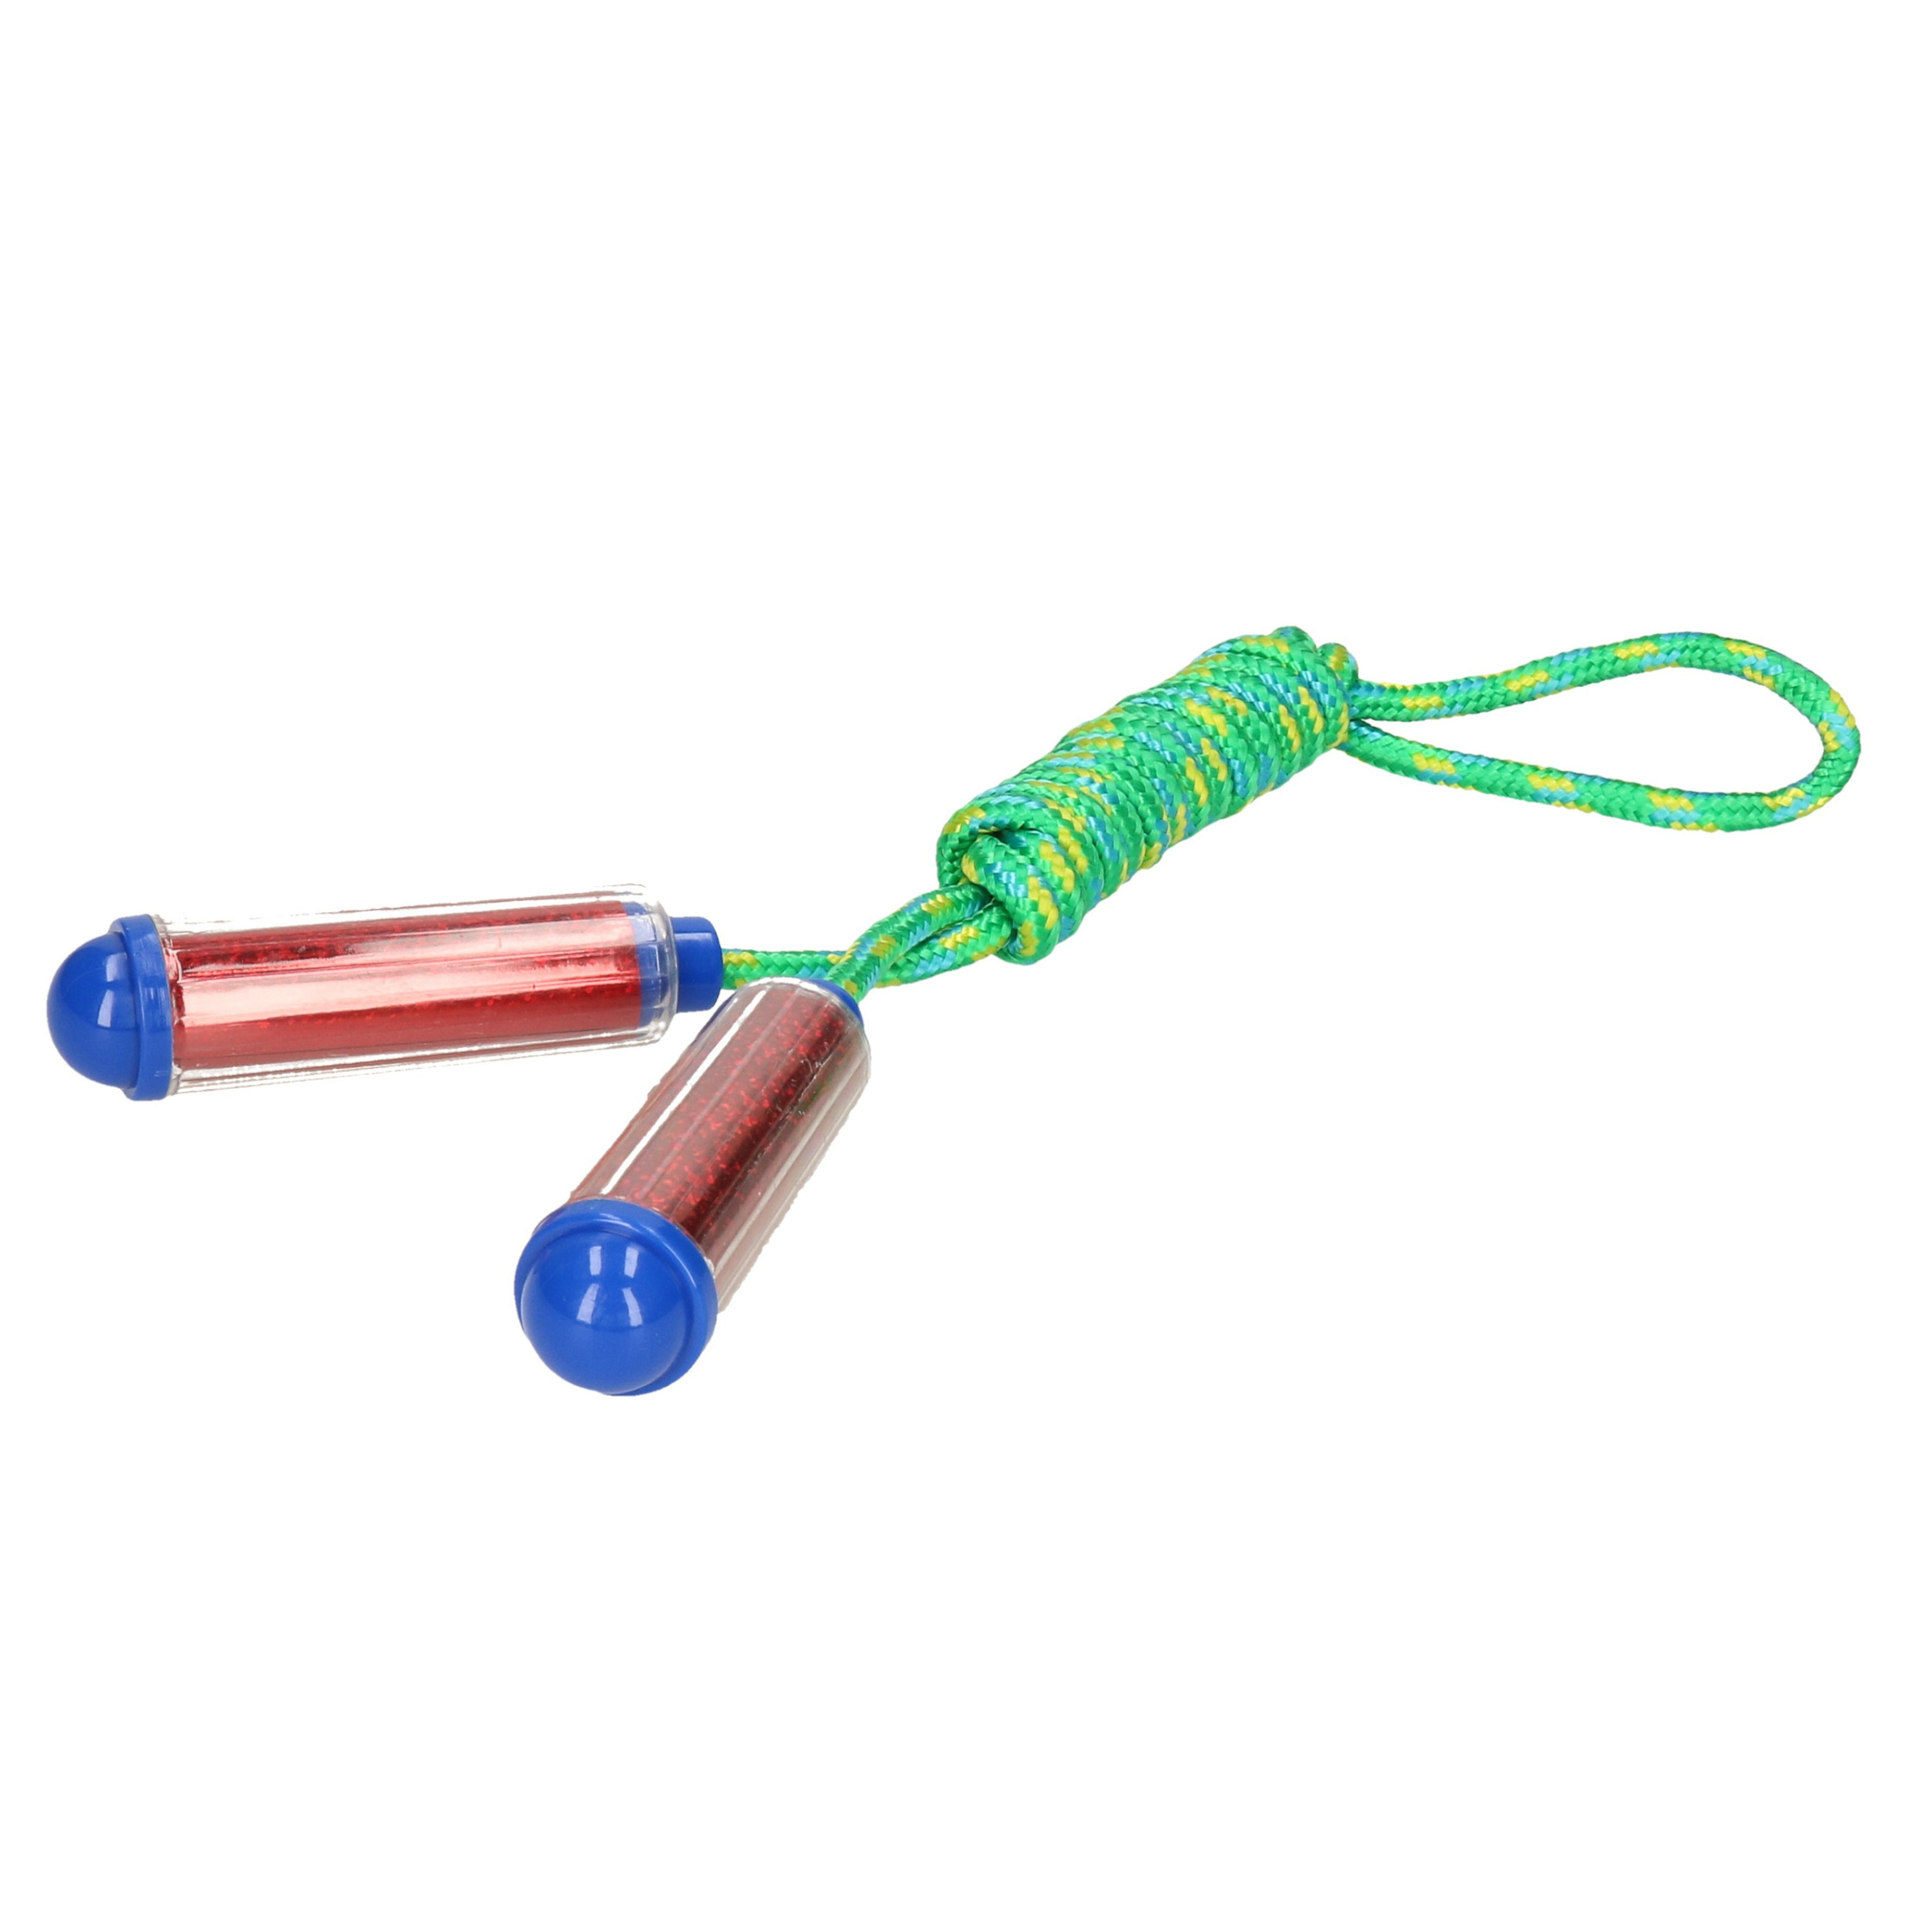 Springtouw met kunststof handvatten groen-rood 210 cm speelgoed